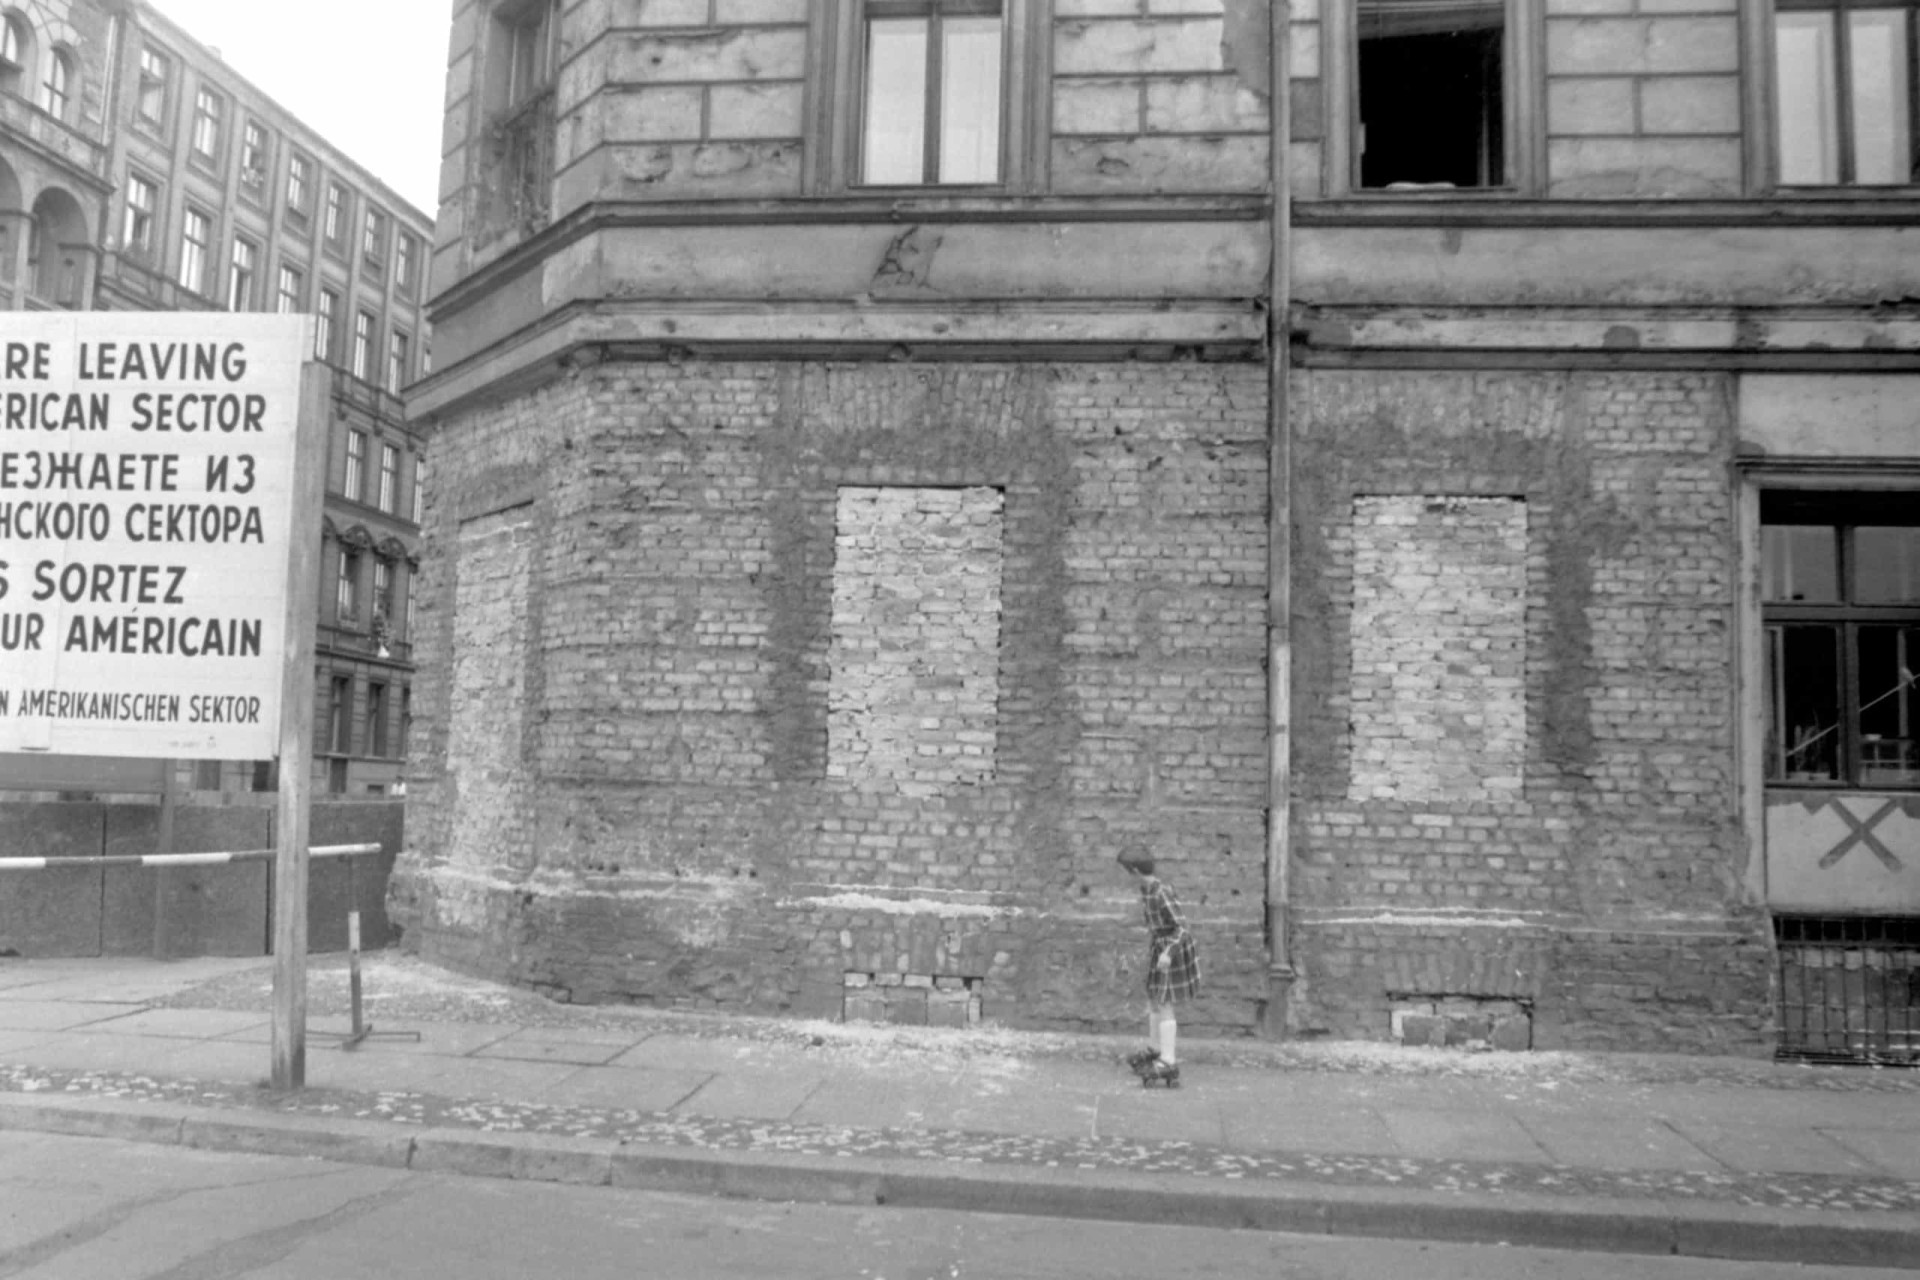 <p>Im Bild: Ein Kind auf Rollschuhen fährt die Luckauer Straße im Ostberliner Stadtteil Kreuzberg hinunter. Wegen der Nähe zur Mauer sind die Fenster im Keller des Hauses zugemauert, um einen Fluchtversuch in den Westen zu verhindern.</p>